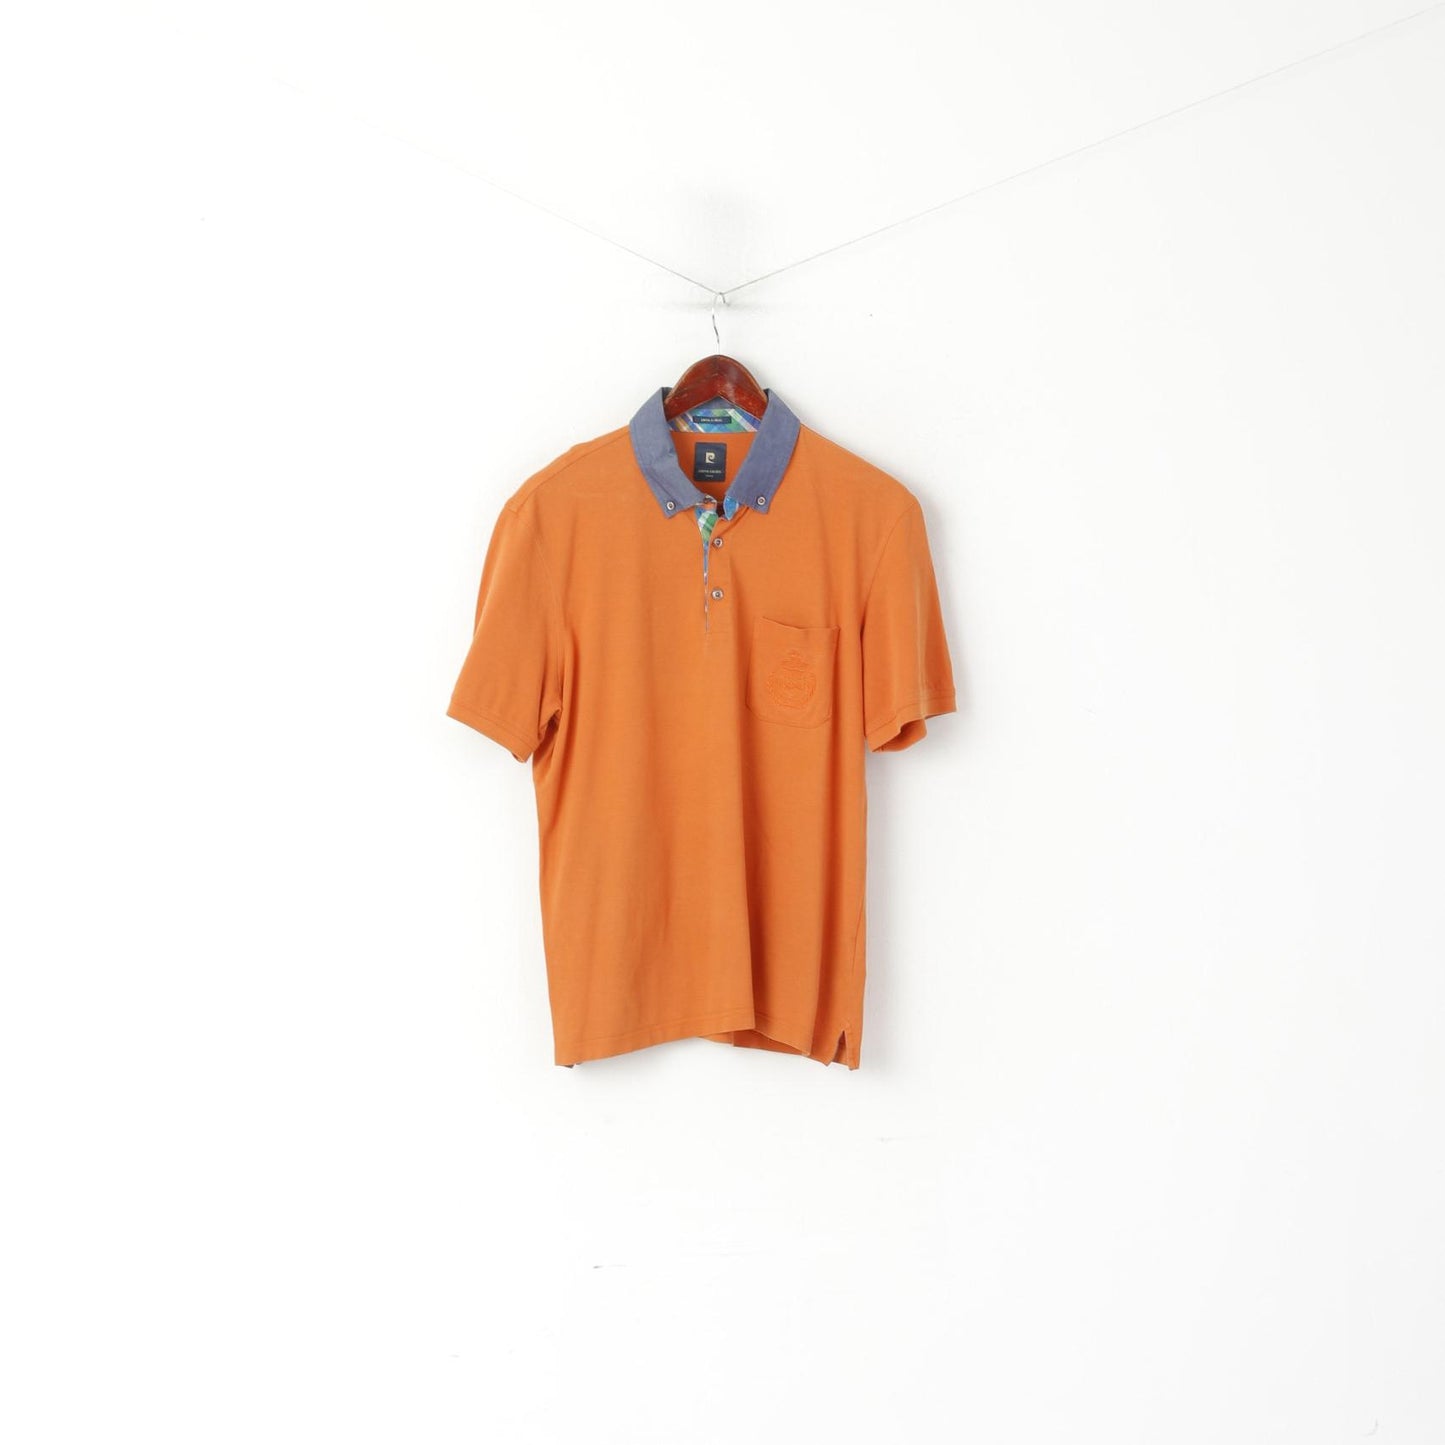 Pierre Cardin Paris Men L (M) Polo Shirt Orange Cotton Vintage Detailed Buttons Top